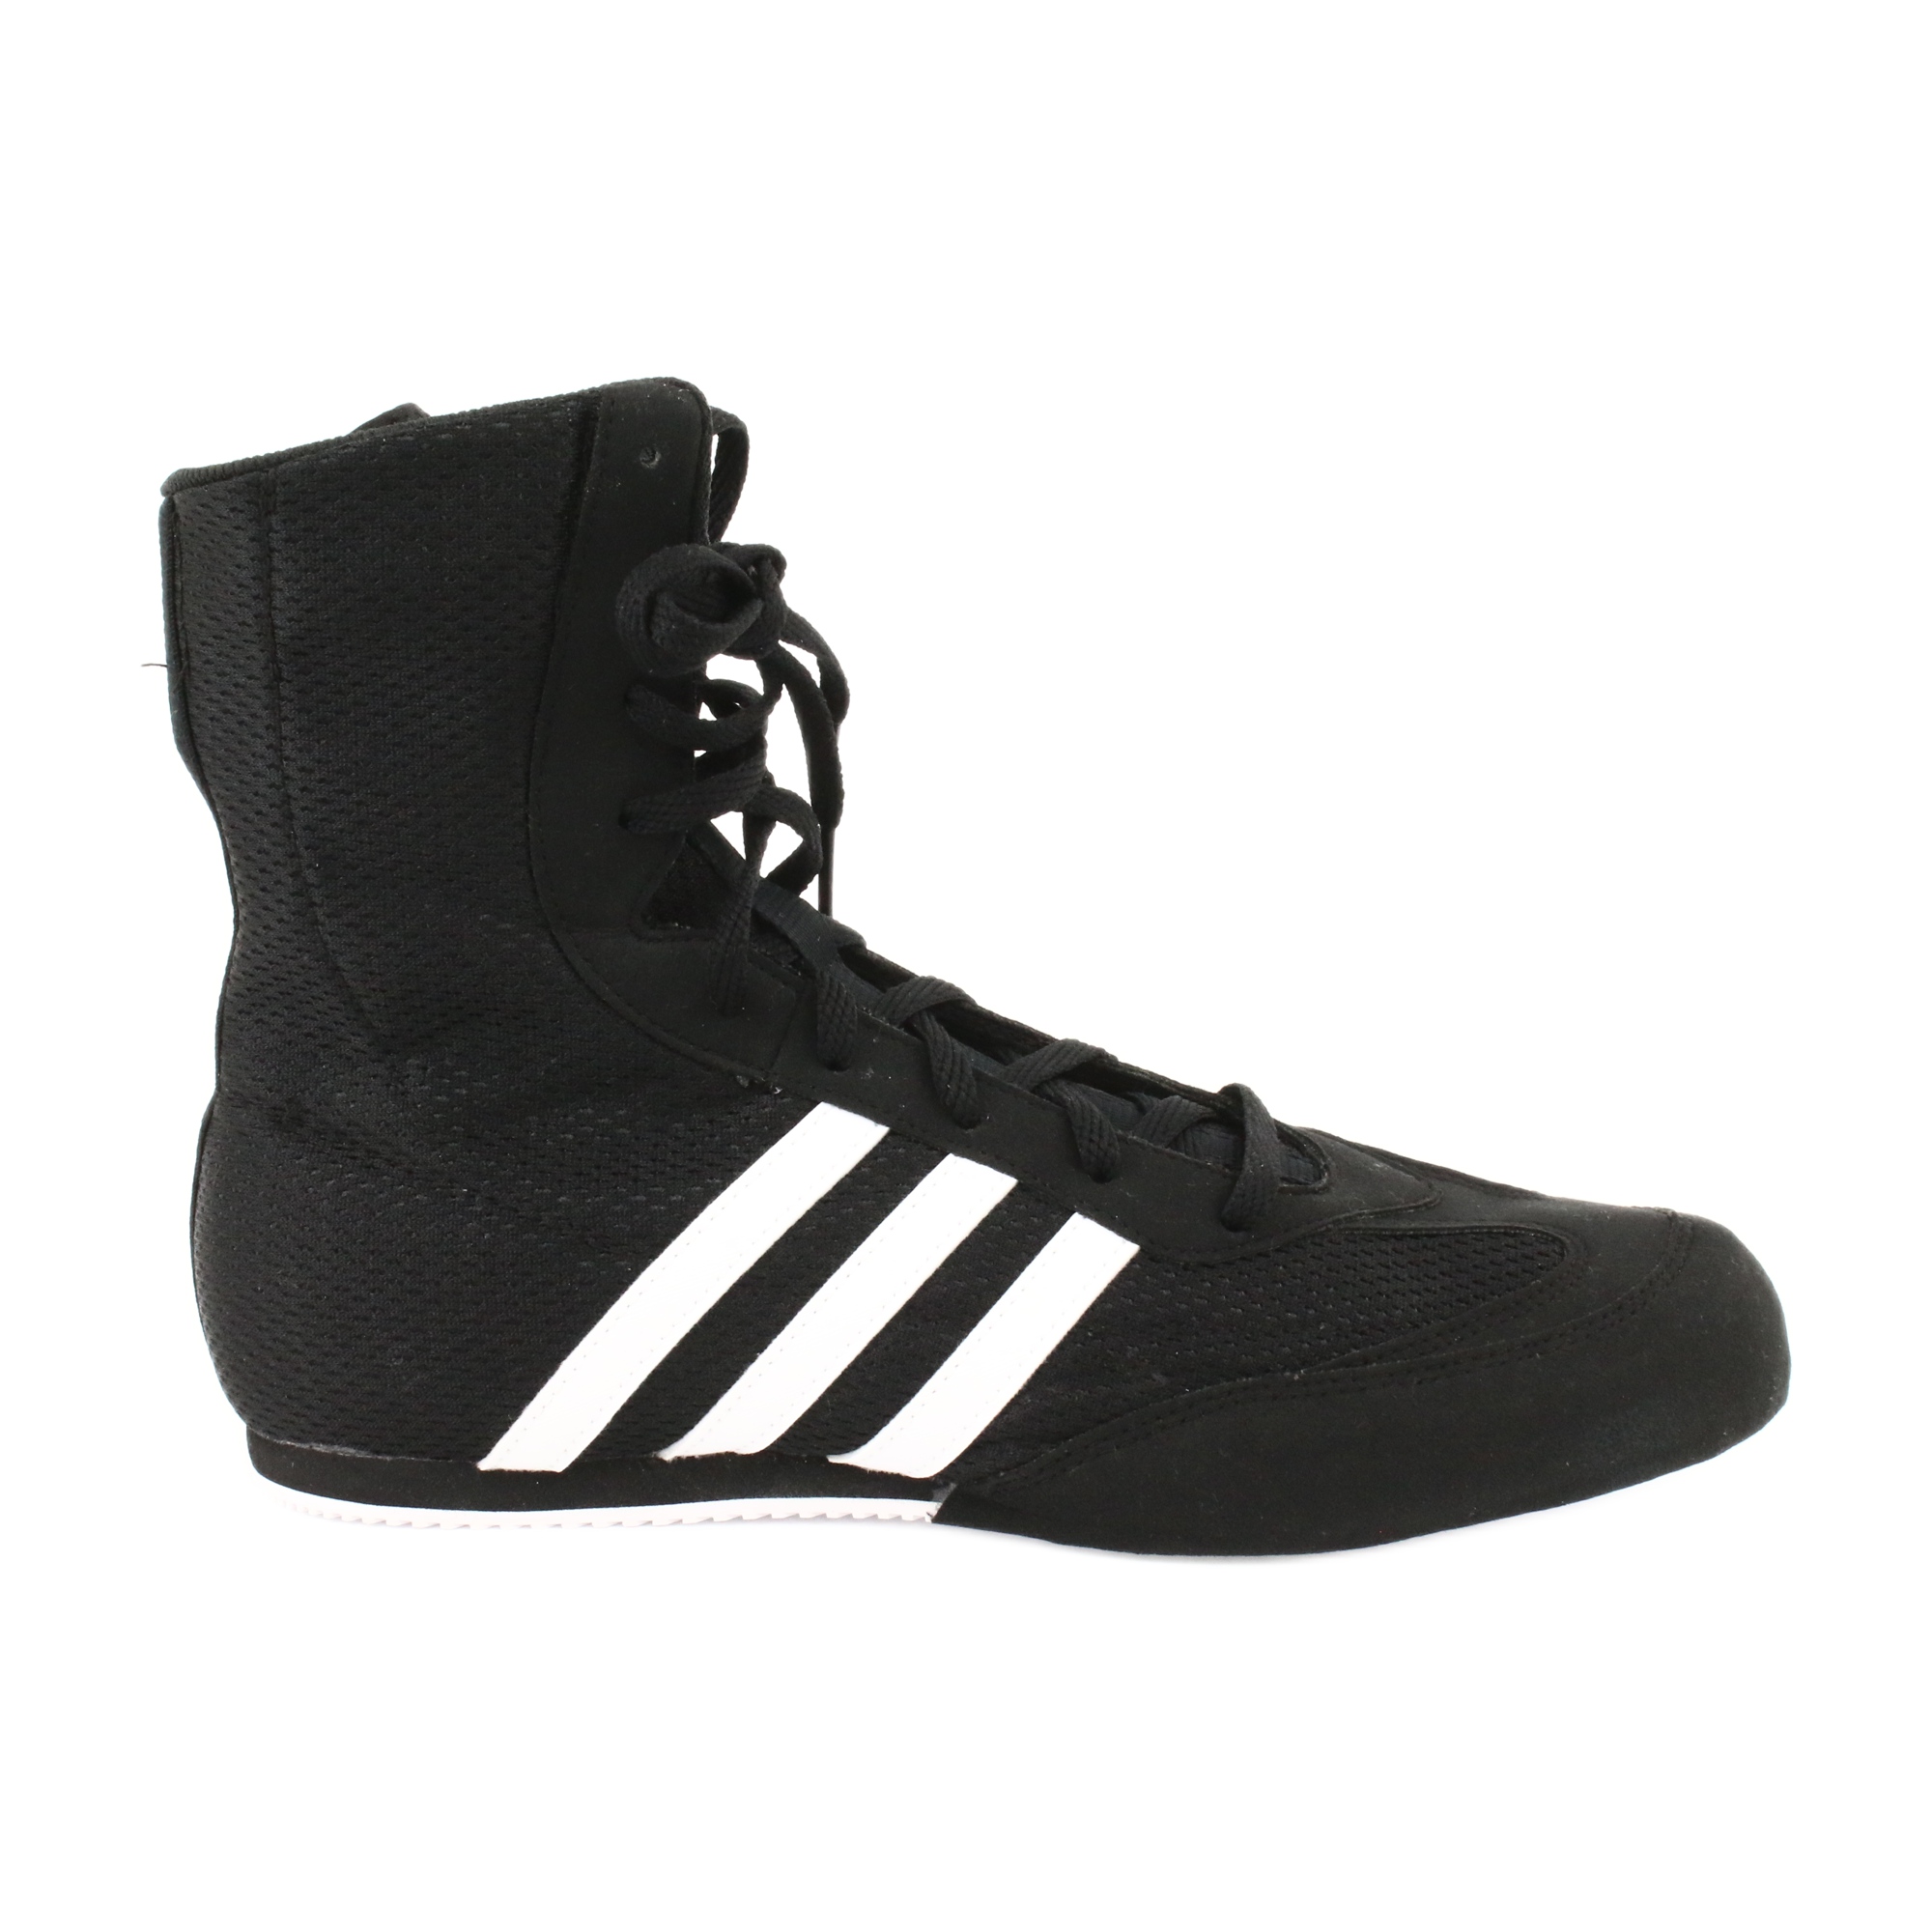 Buty bokserskie adidas Box Hog 2 FX0561 białe czarne